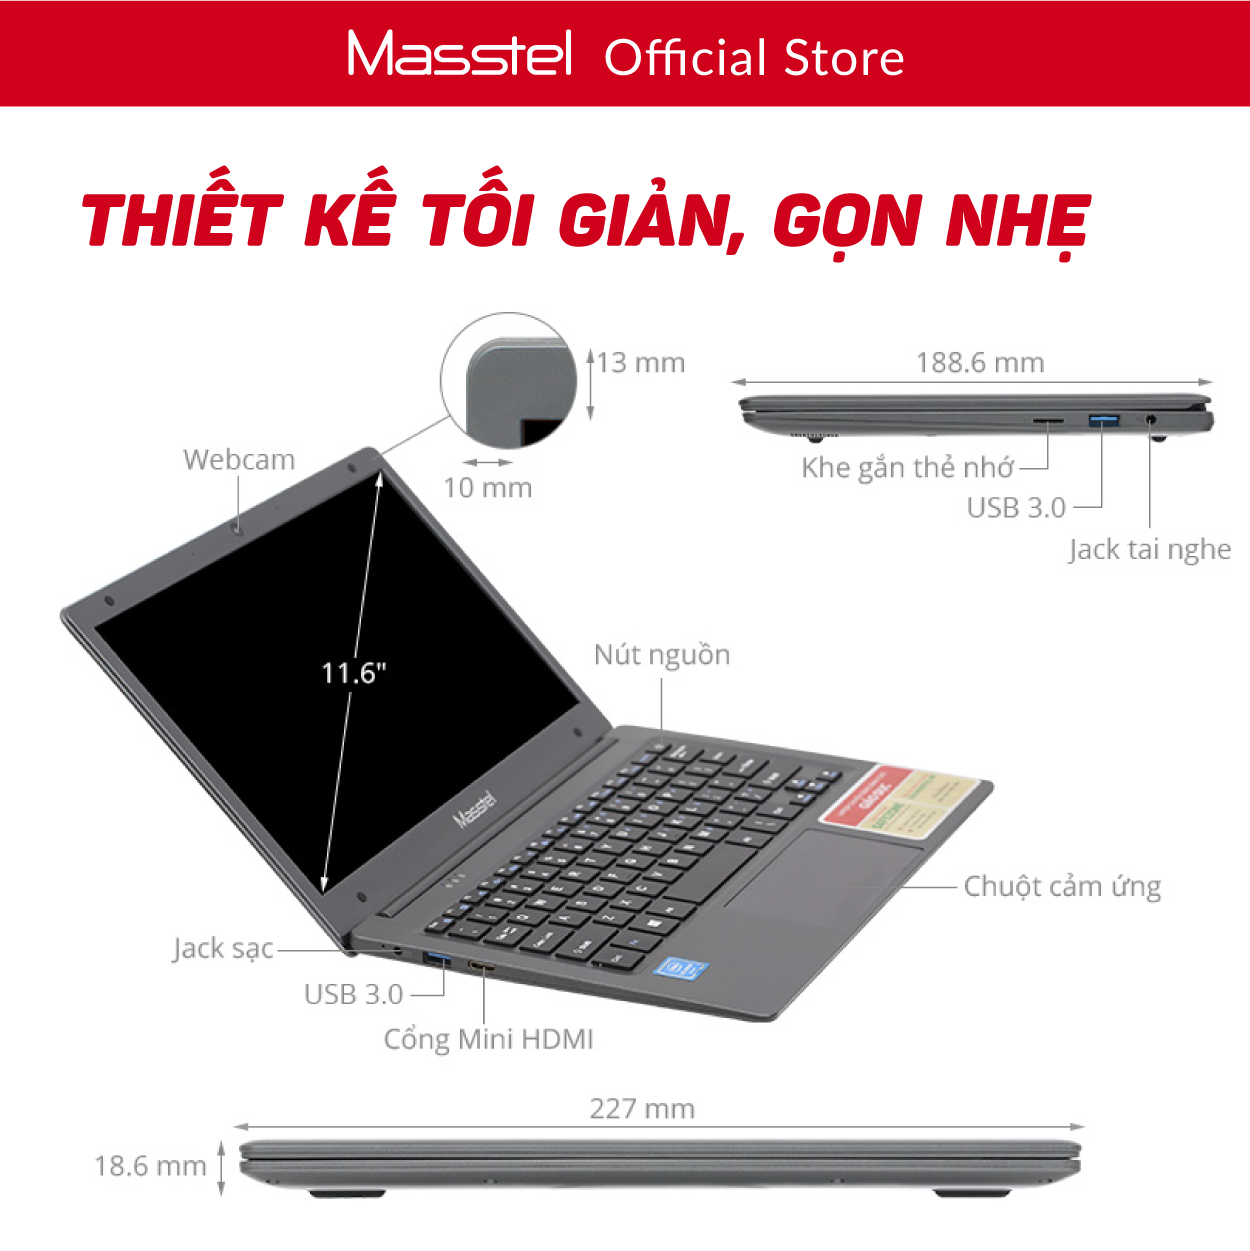 Laptop Giáo dục Masstel E116 - Khoá học Toán - Tiếng Việt - Tiếng Anh từ lớp 1 đến lớp 5 - Bảo hành 12 tháng